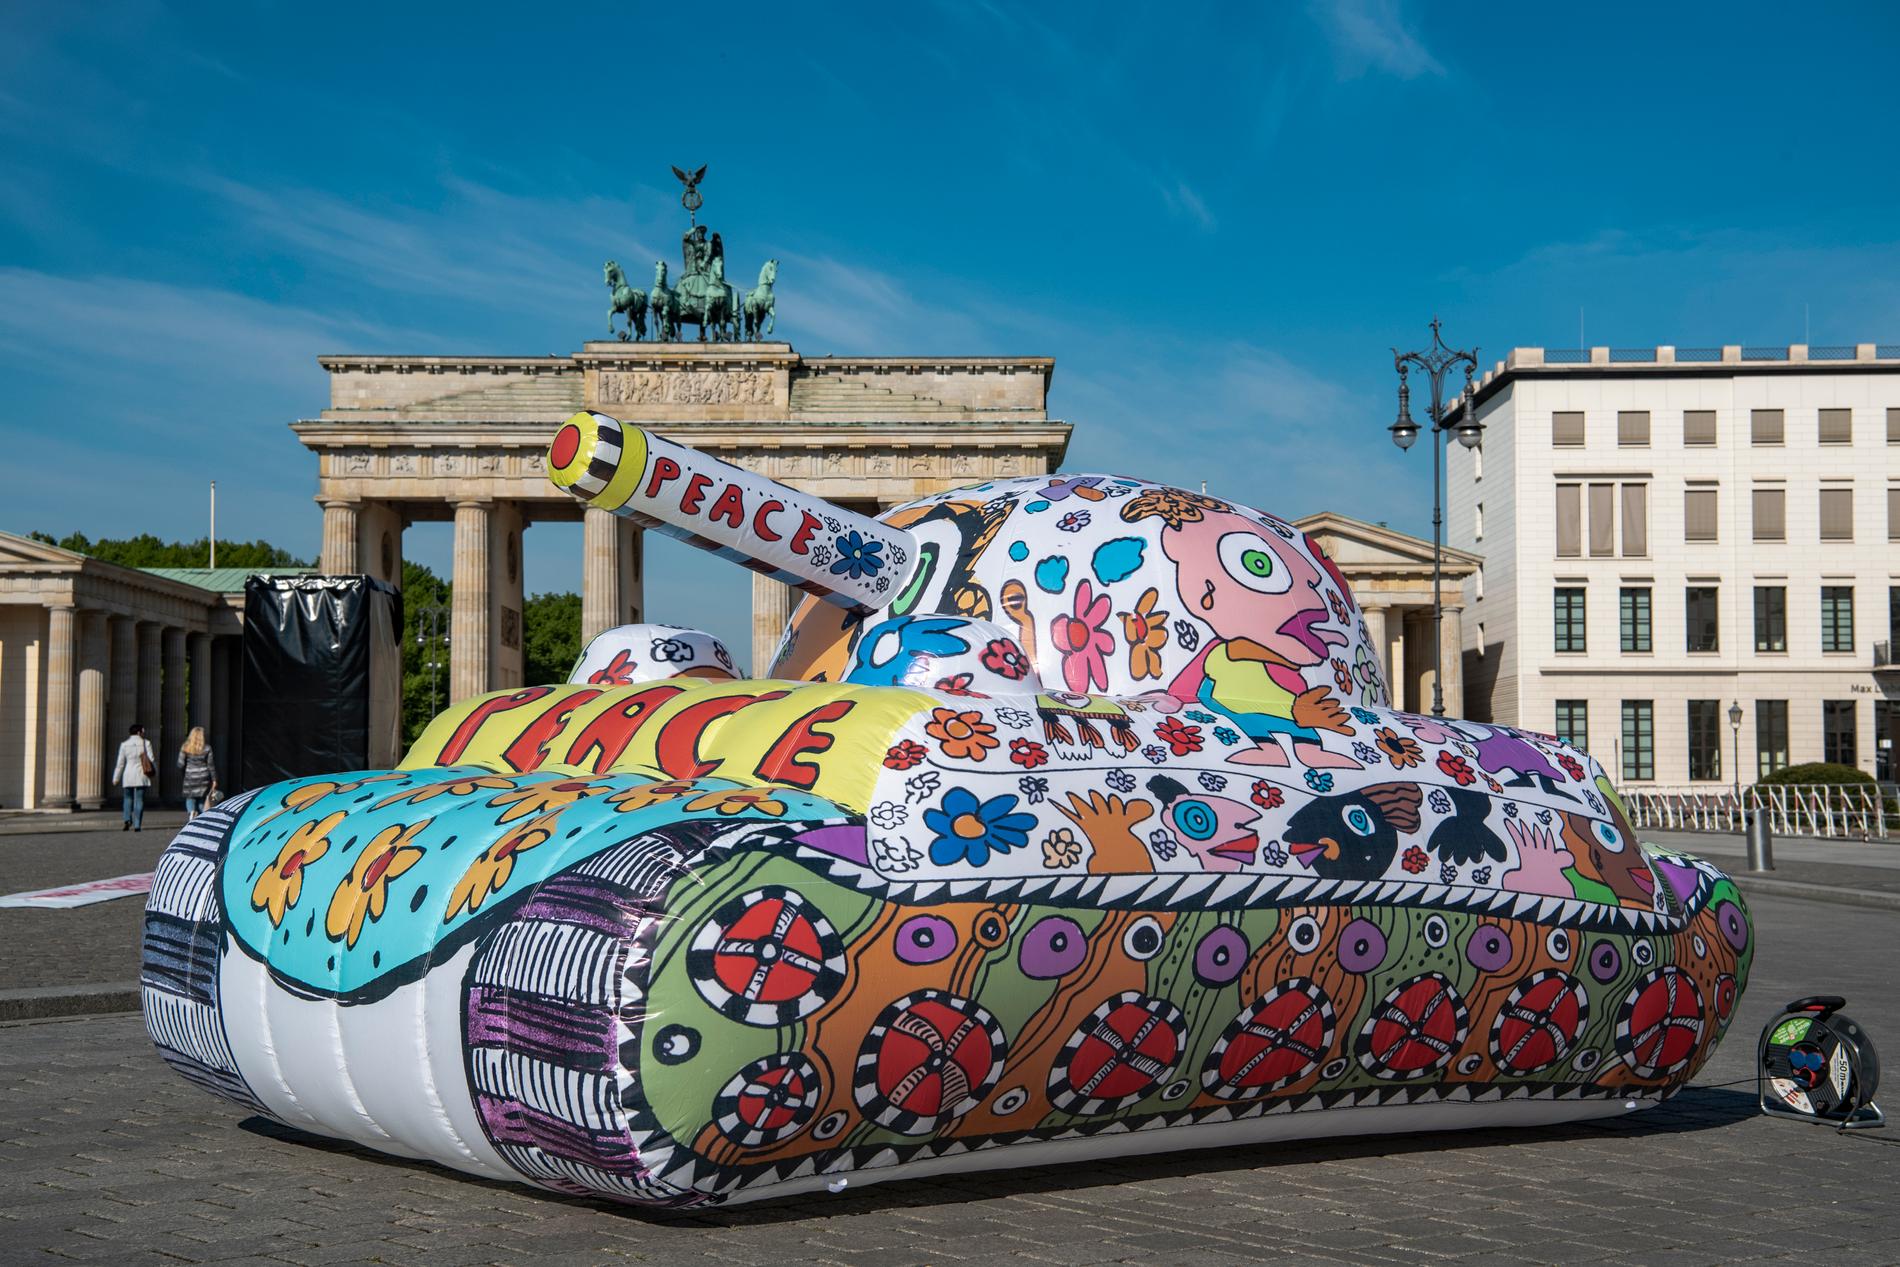 Den tyska popkonstnären Michael Fischer har byggt en uppblåsbar tank framför Branderburger Tor för att fira minnet av krigsslutet. 